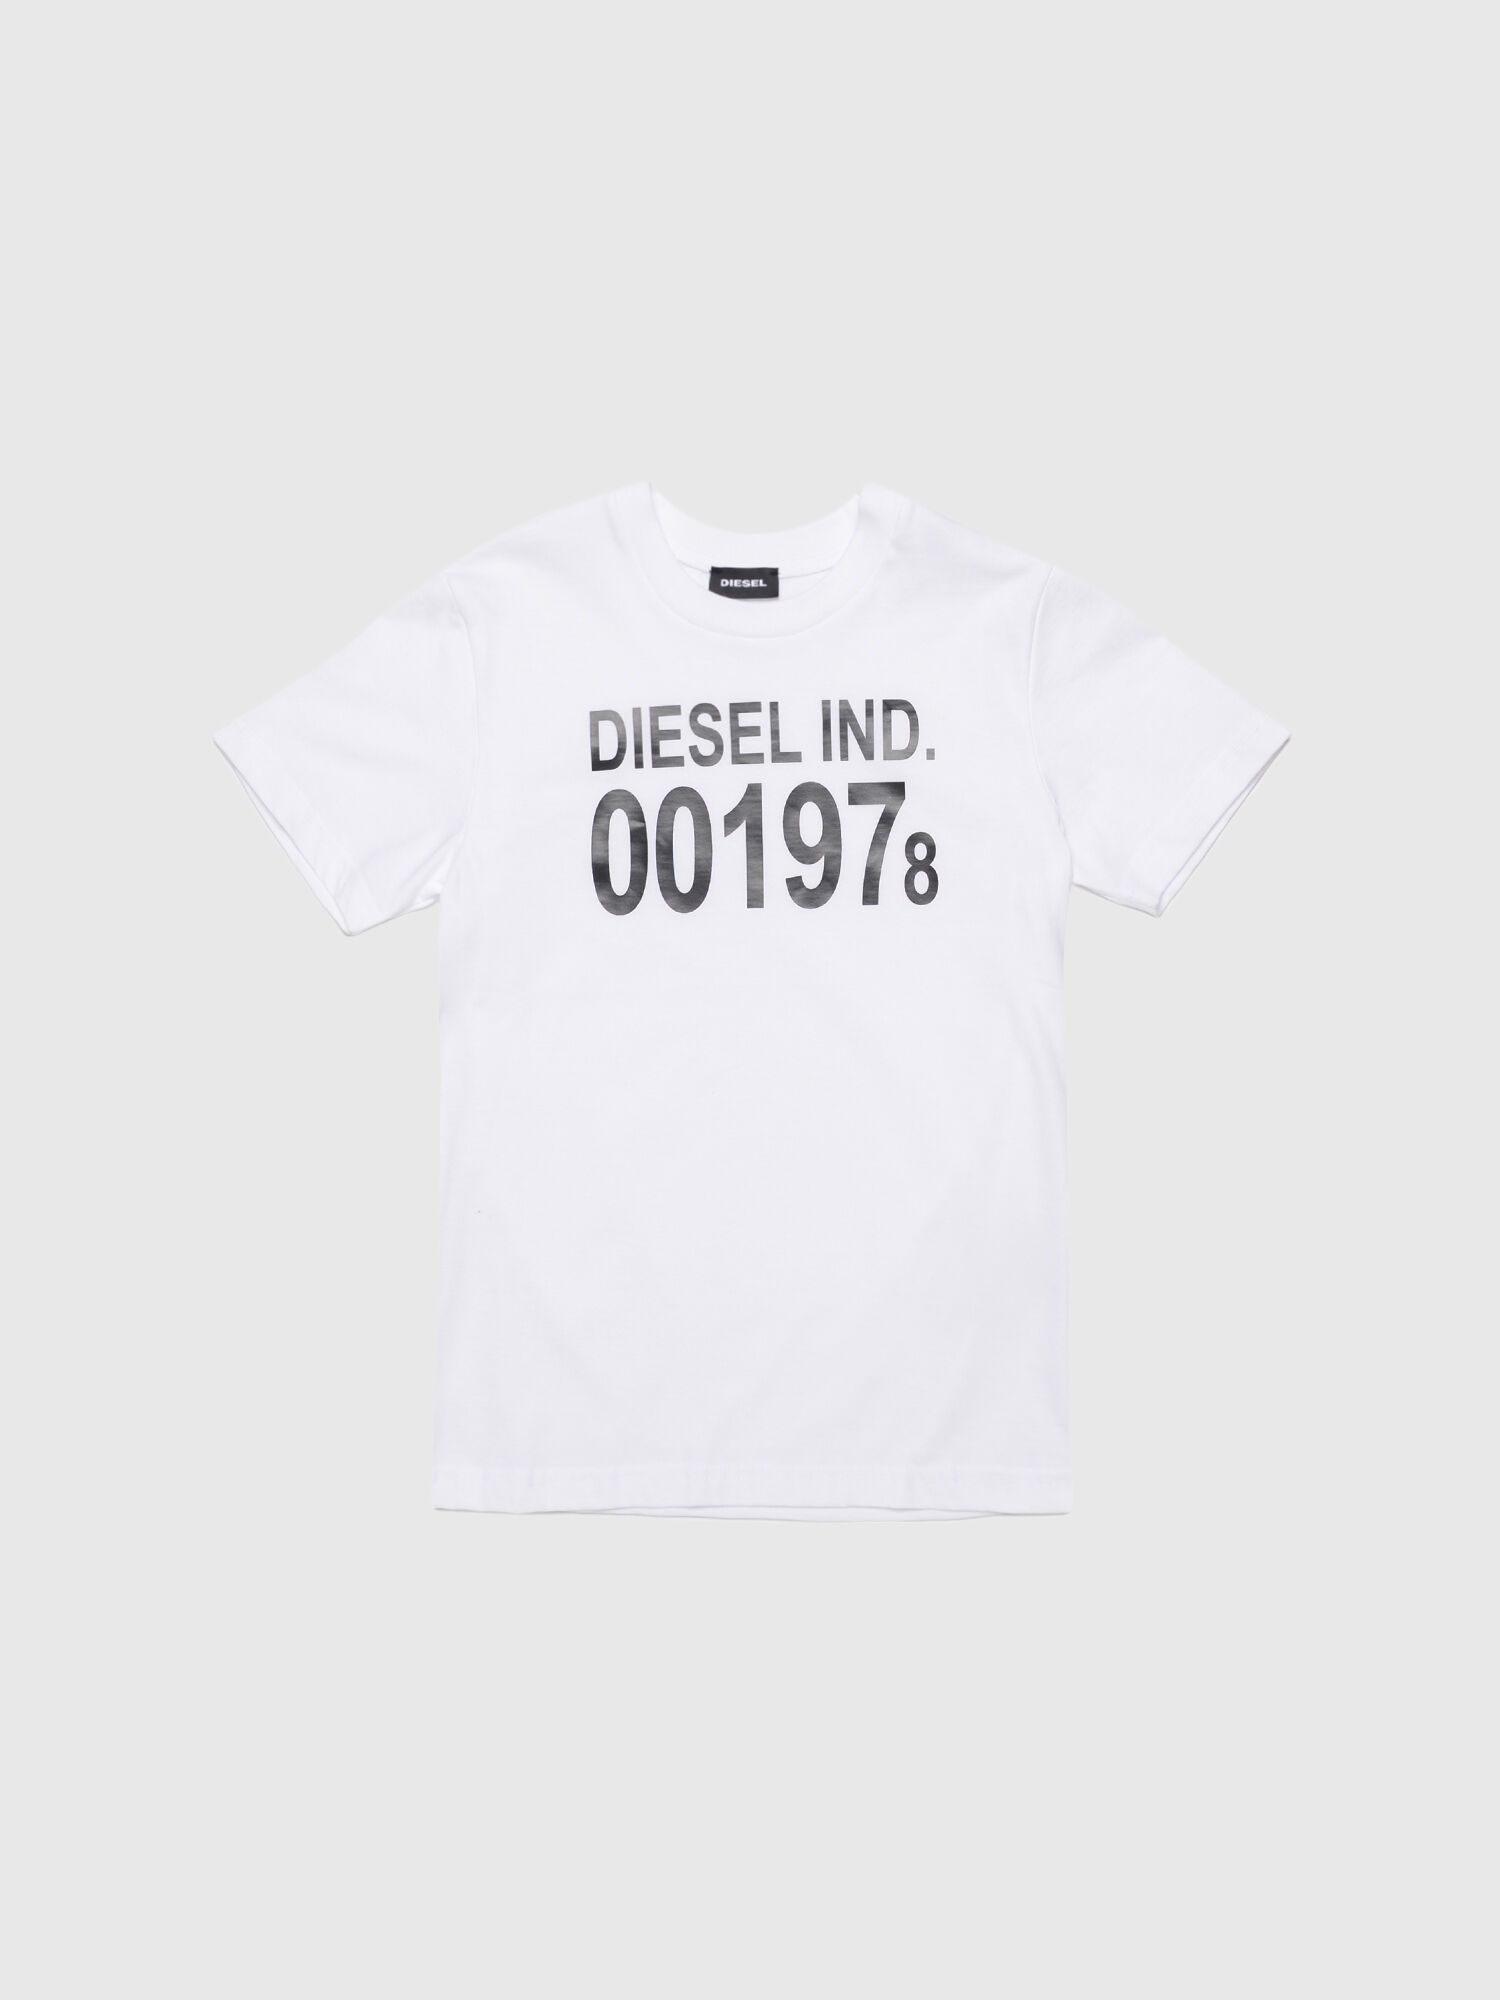 Diesel - TDIEGO001978, Blanco - Image 1